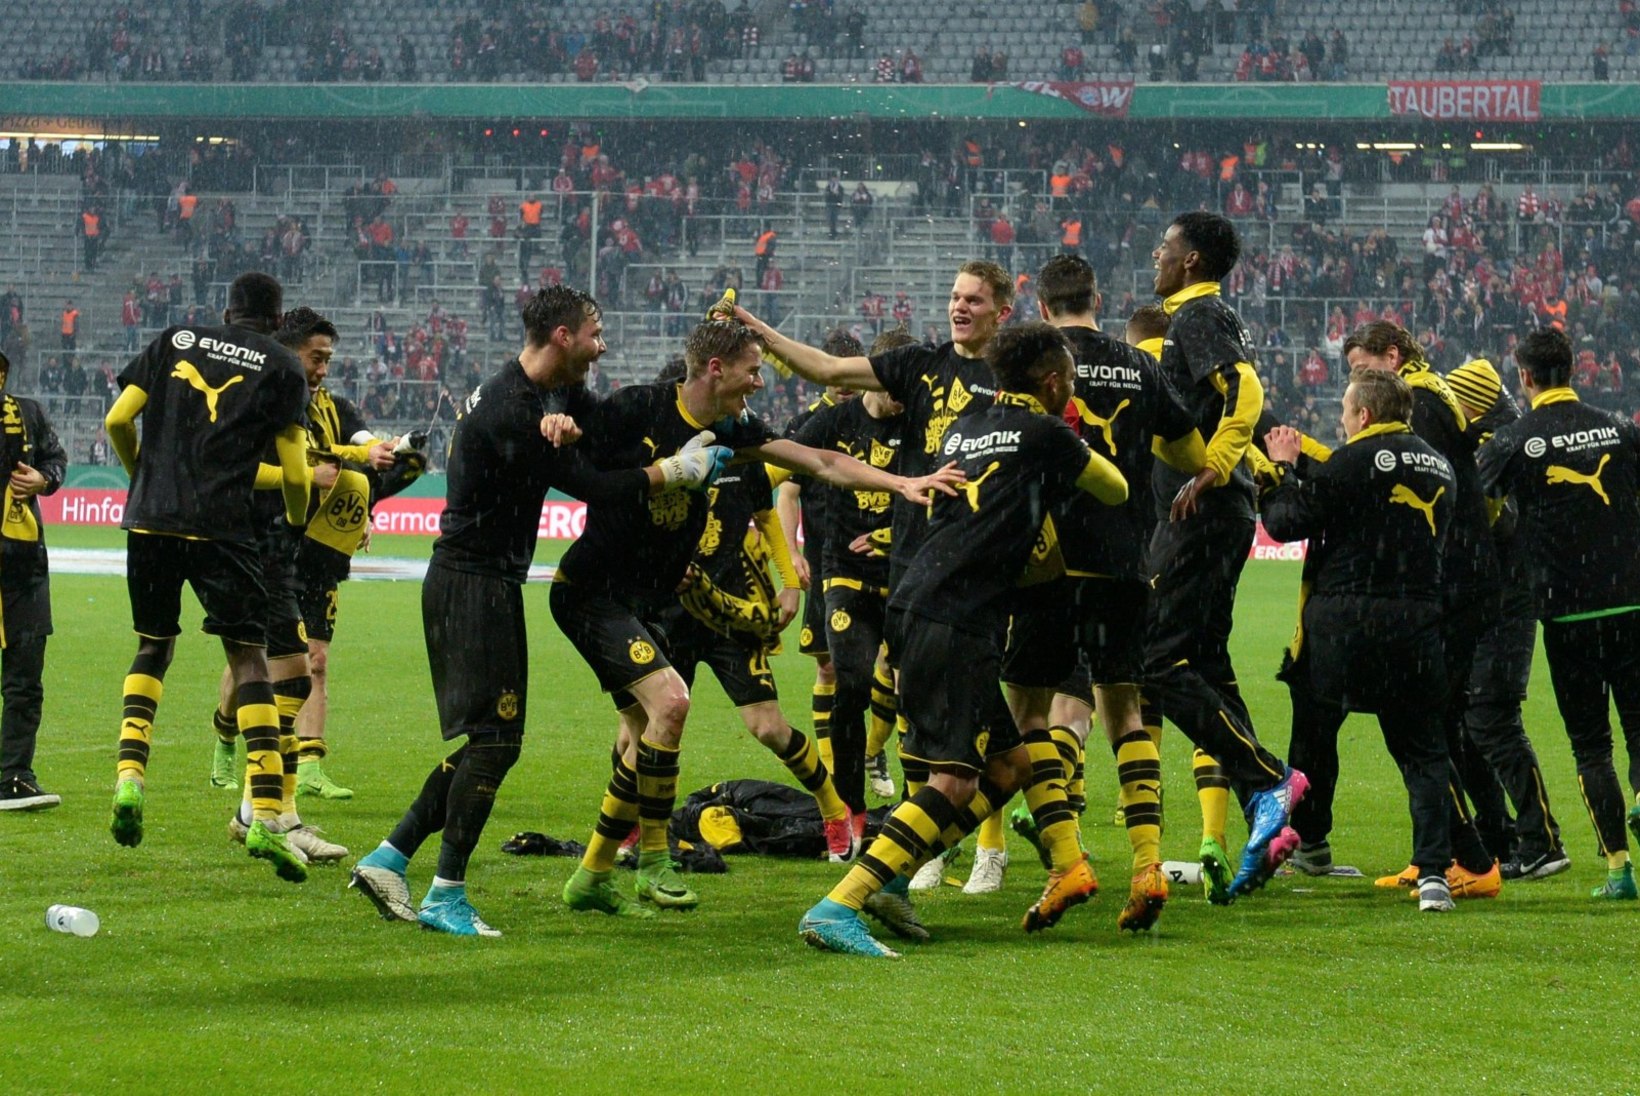 NII SEE JUHTUS | Sport 26.04: Dortmund tümitas poolfinaalis Bayernit, Kontaveit sai ajaloolise võidu